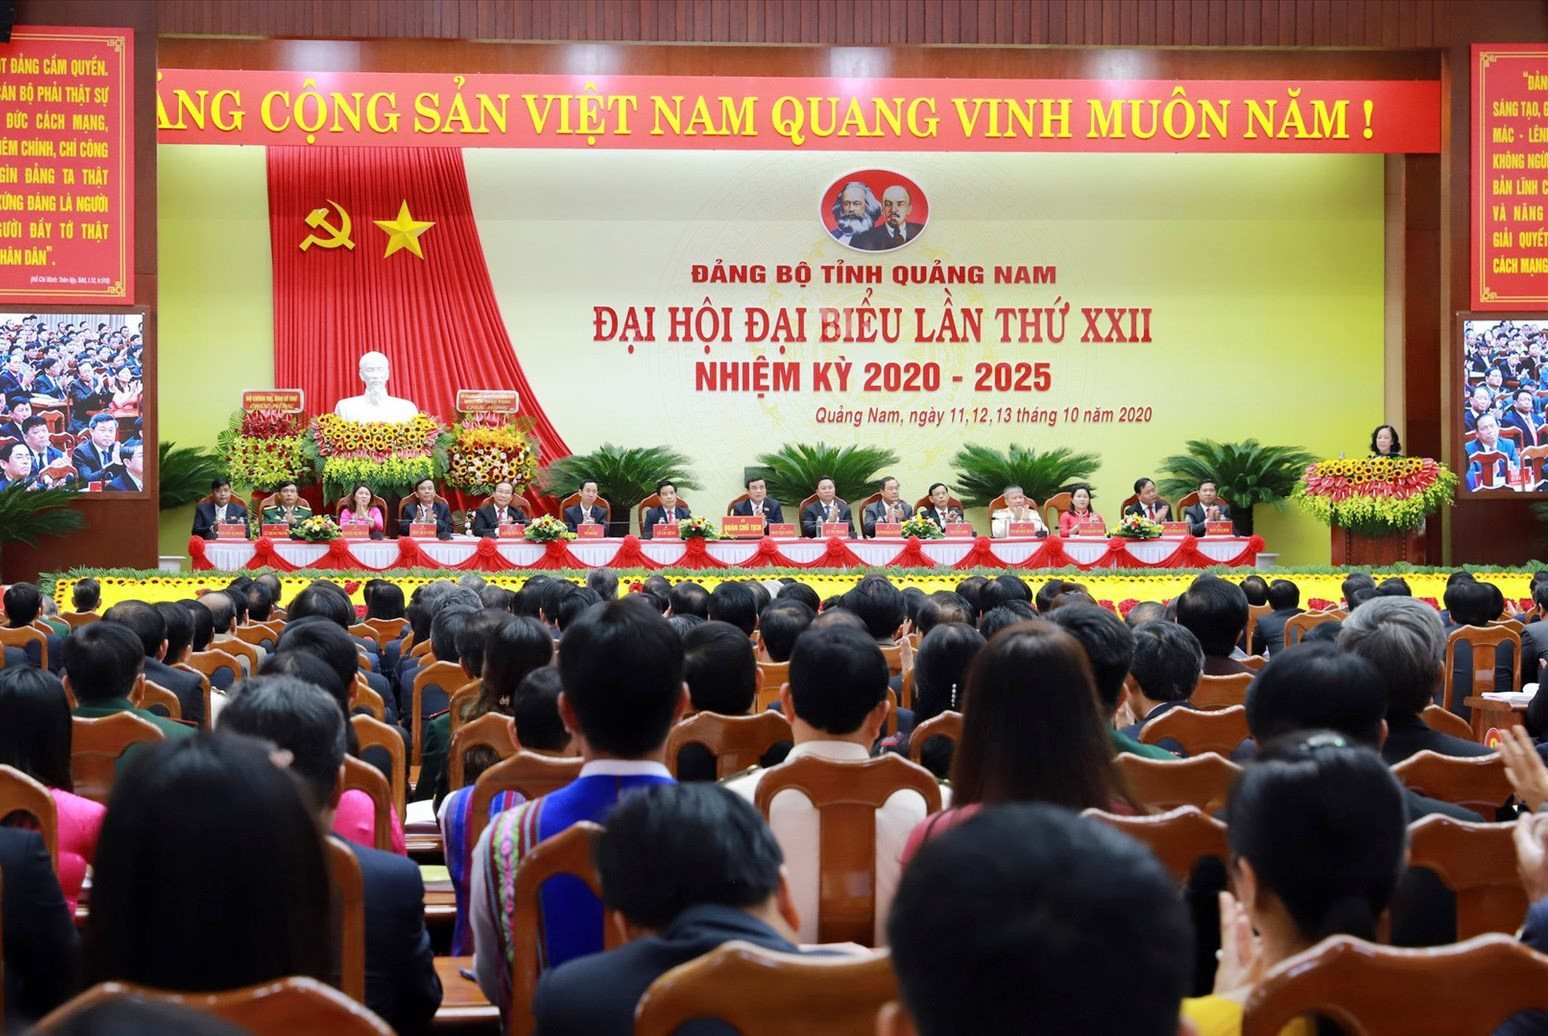 Thông qua các hoạt động kỷ niệm nhằm ôn lại truyền thống cách mạng vẻ vang của Đảng bộ tỉnh Quảng Nam... Trong ảnh: Đại hội đại biểu Đảng bộ tỉnh Quảng Nam lần thứ XXII (nhiệm kỳ 2020 - 2025) vào tháng 10/2020. Ảnh: Báo Quảng Nam